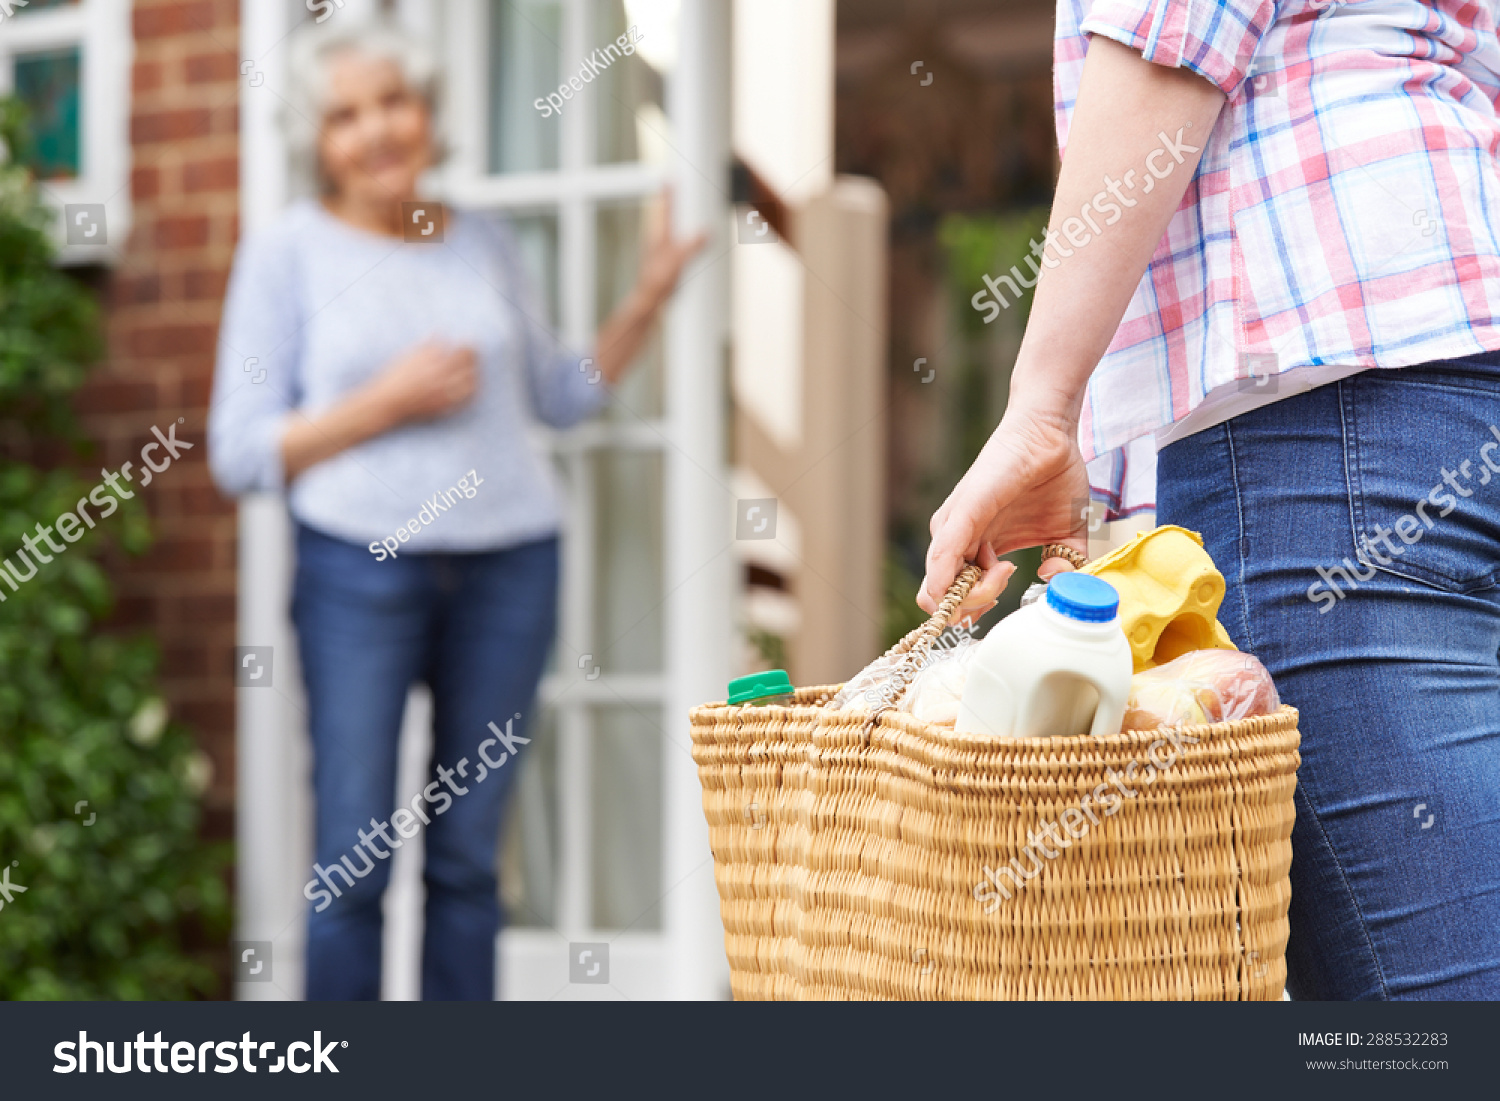 Person Doing Shopping For Elderly Neighbor #288532283